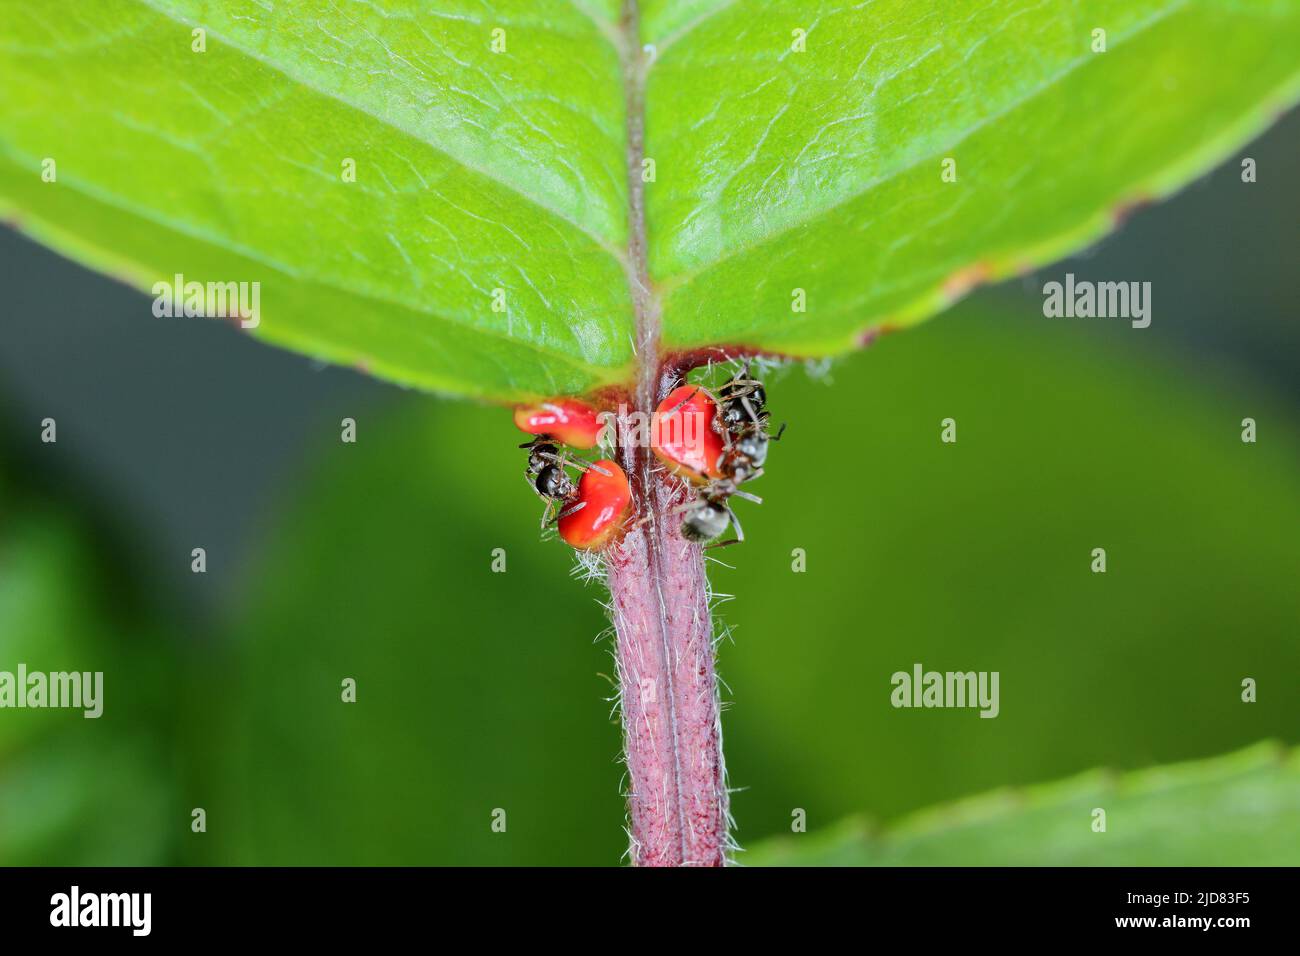 Formica nera, formica nera comune, formica da giardino (Lasius niger), nutrendo i nettari extrafora su una foglia di ciliegia. Foto Stock